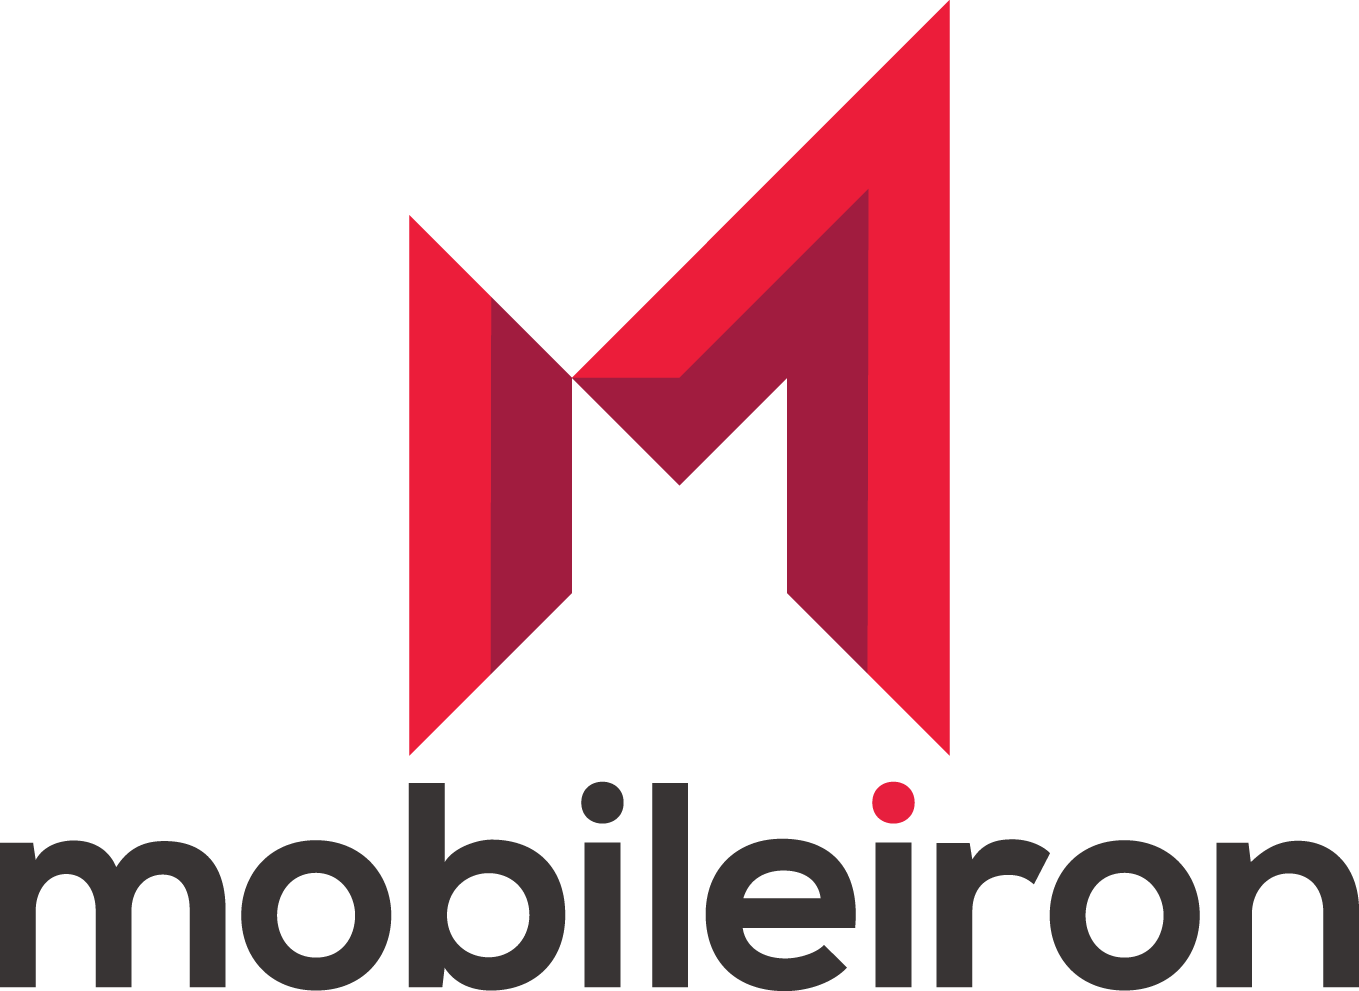 MobileIron Logo